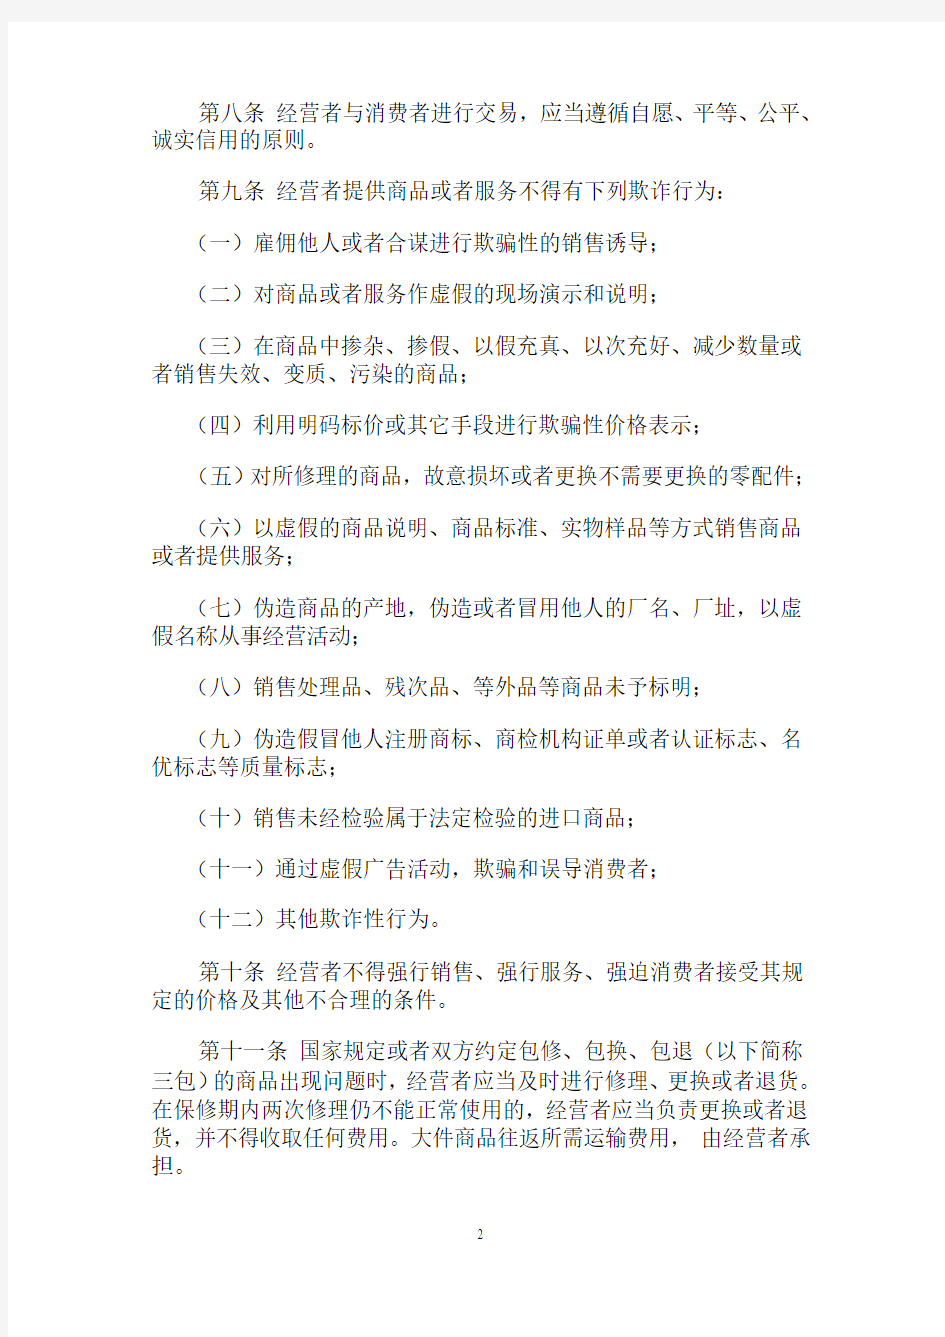 1995黑龙江省消费者权益保护条例